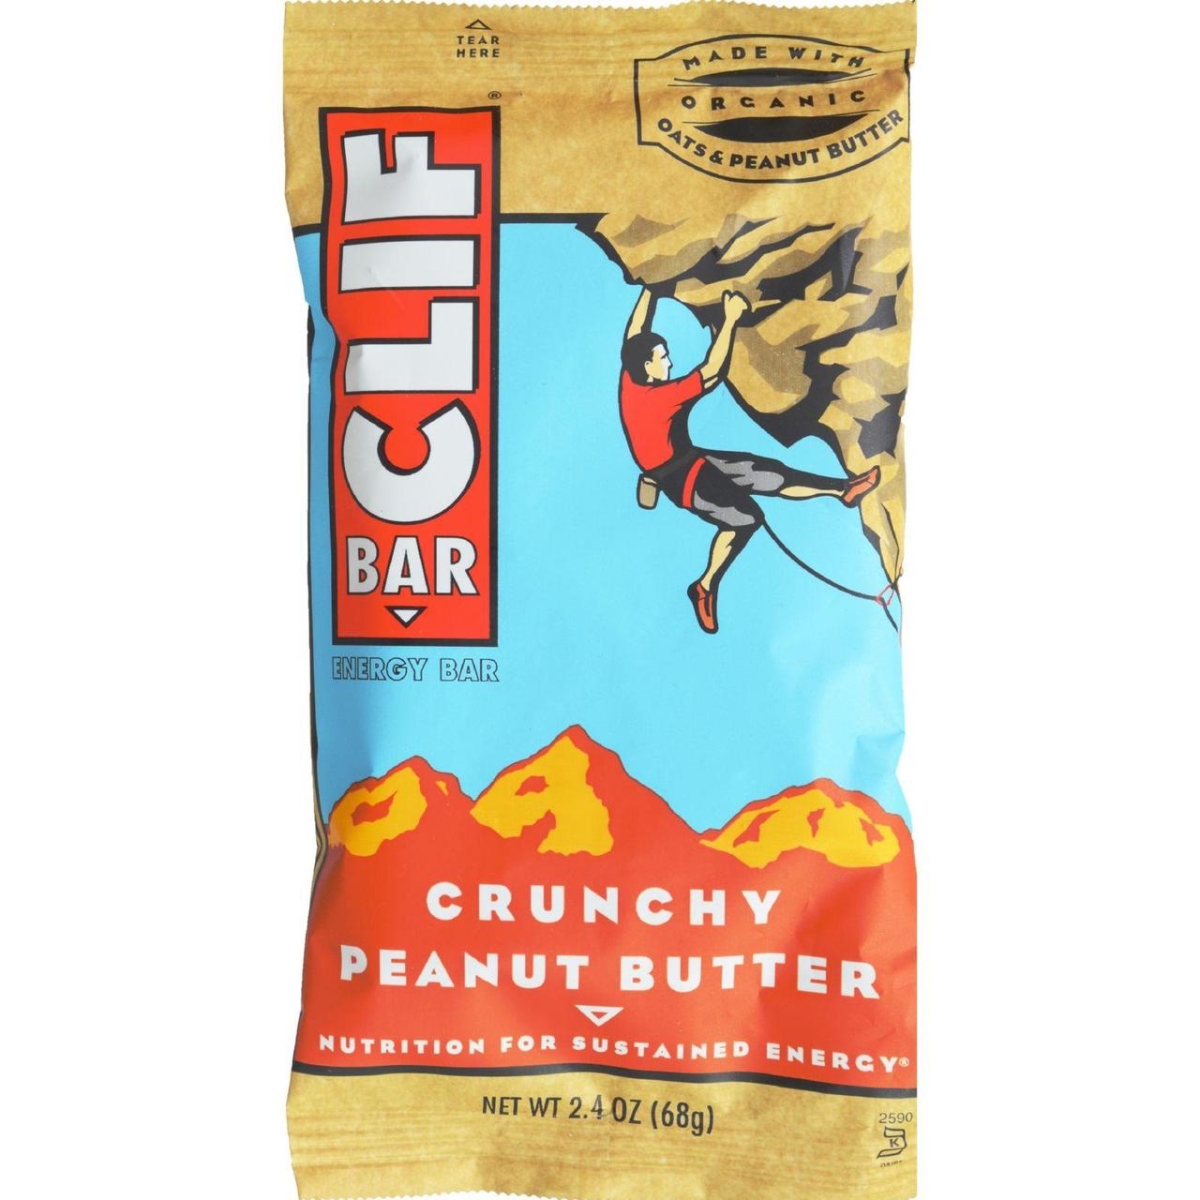 Clif Bar Hg0467480 2.4 Oz Organic Crunch Peanut Butter - Case Of 12